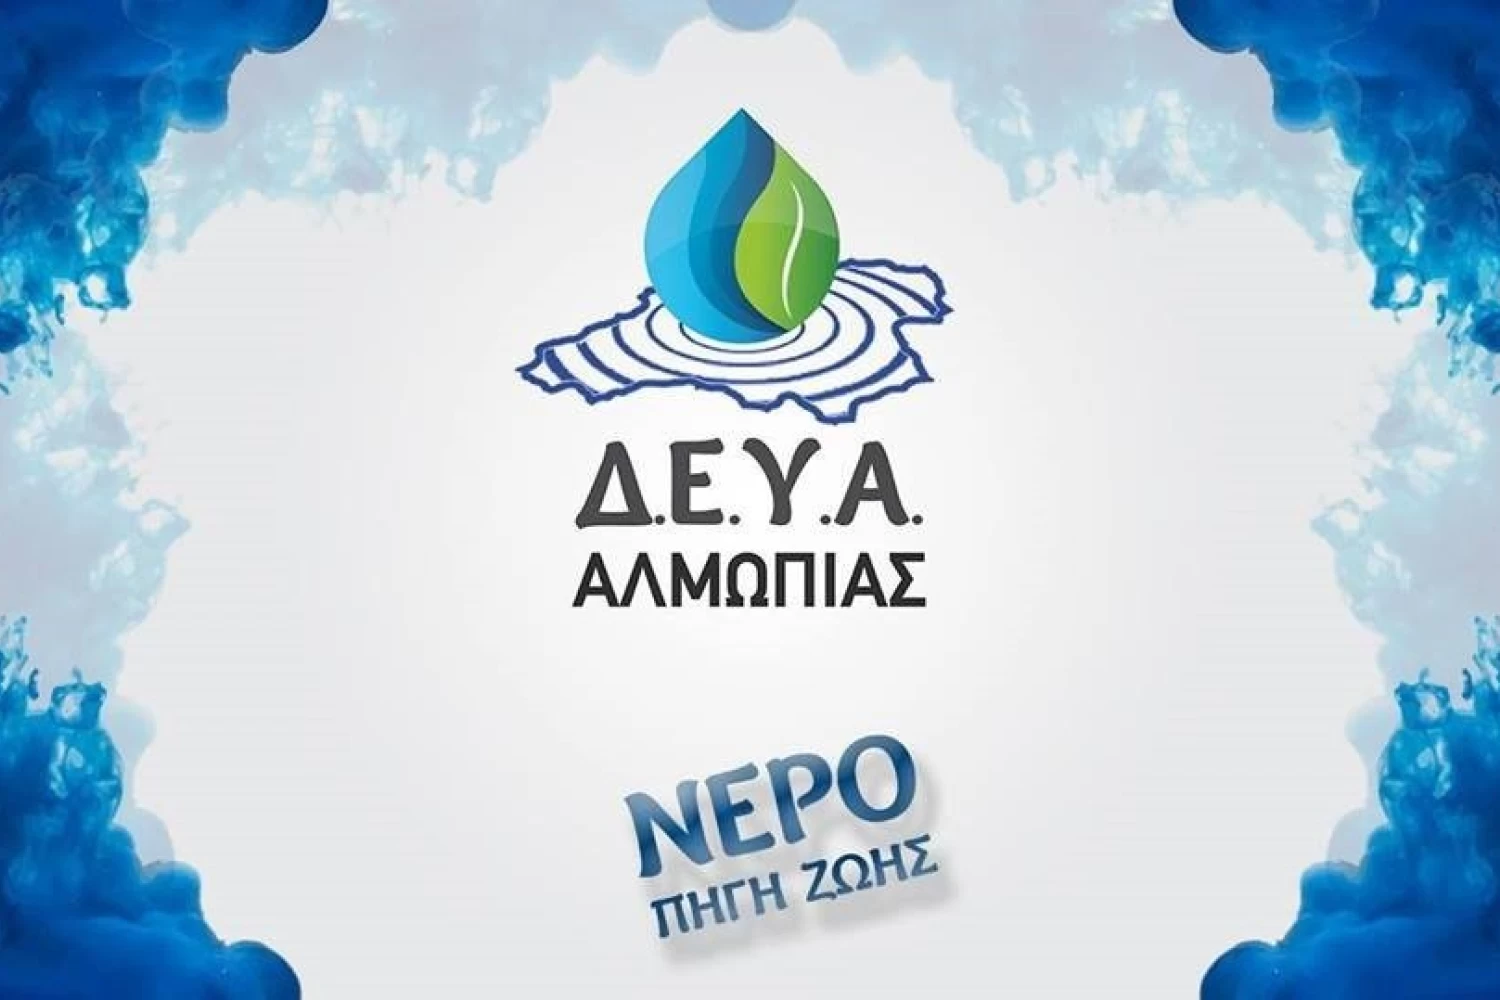 Προσοχή - ΔΕΥΑ Αλμωπίας: στην περιοχή του δυτικού περιφερειακού να μη χρησιμοποιείται το νερό του δικτύου ως πόσιμο!